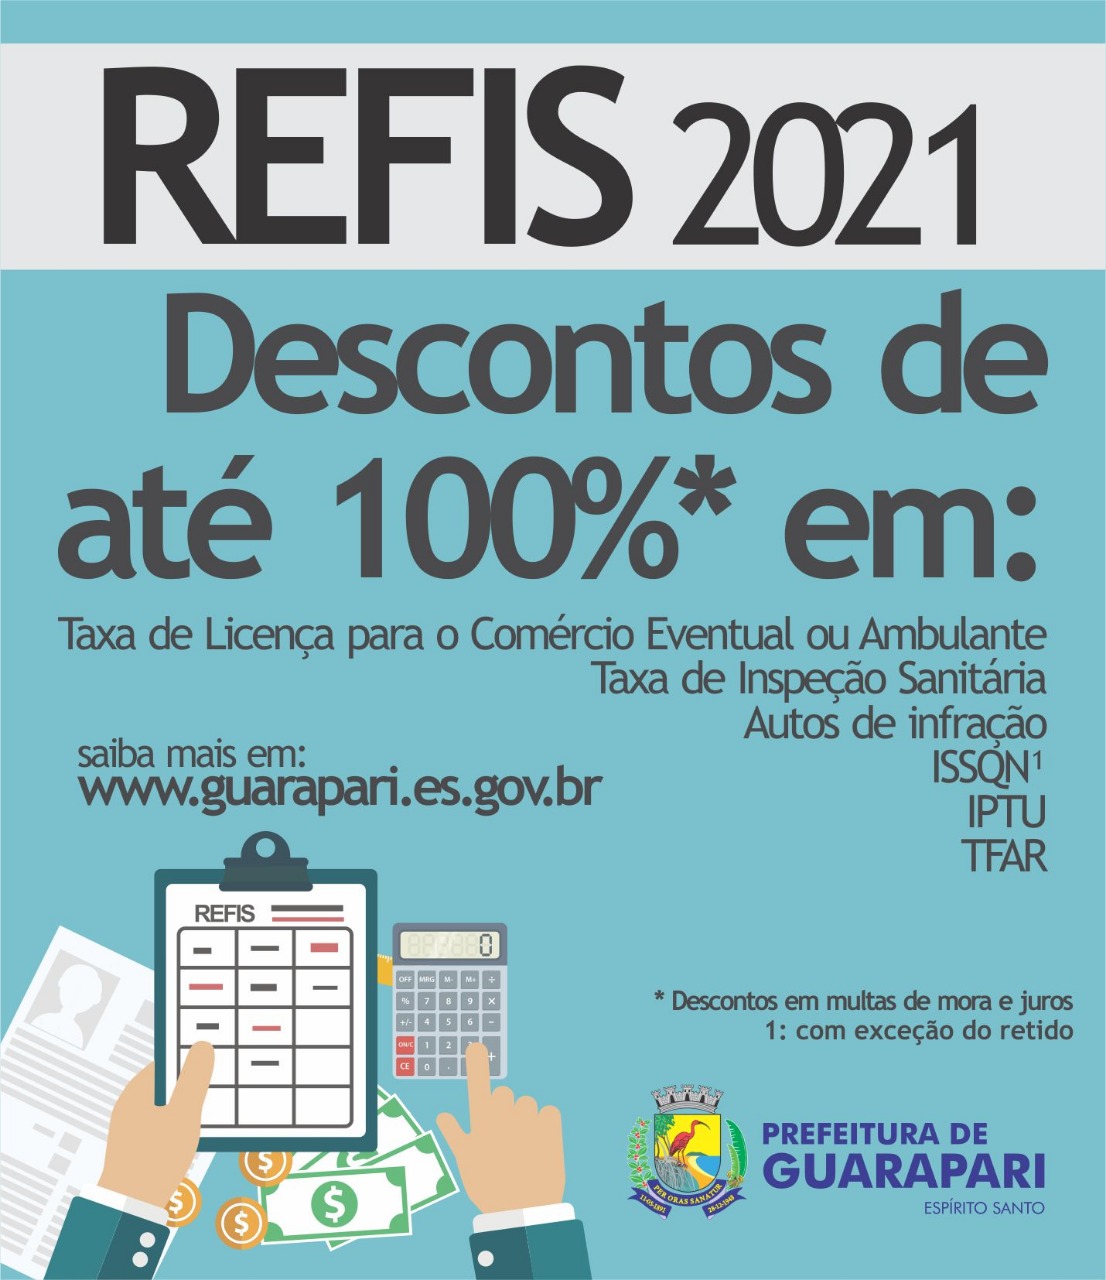 Refis: Guarapari oferece descontos de até 100% para quitação de dívidas